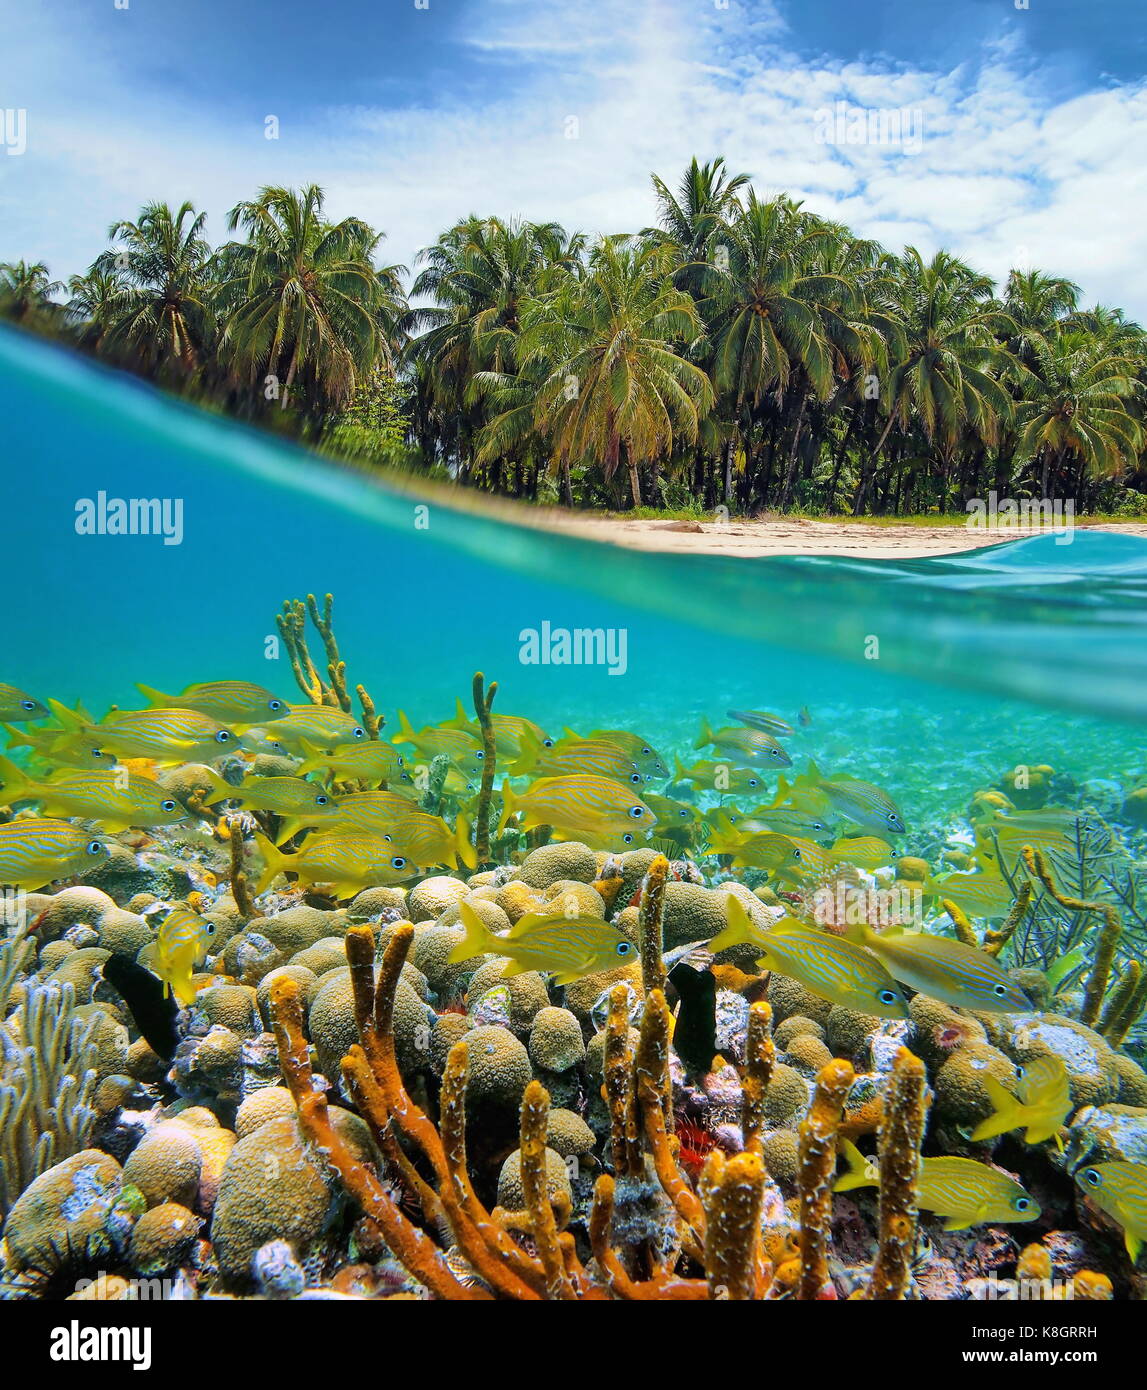 Sur et sous l'eau à proximité d'une mer tropicale de cocotiers et une barrière de corail avec un banc de poissons sous l'eau, mer des caraïbes, le Panama Banque D'Images